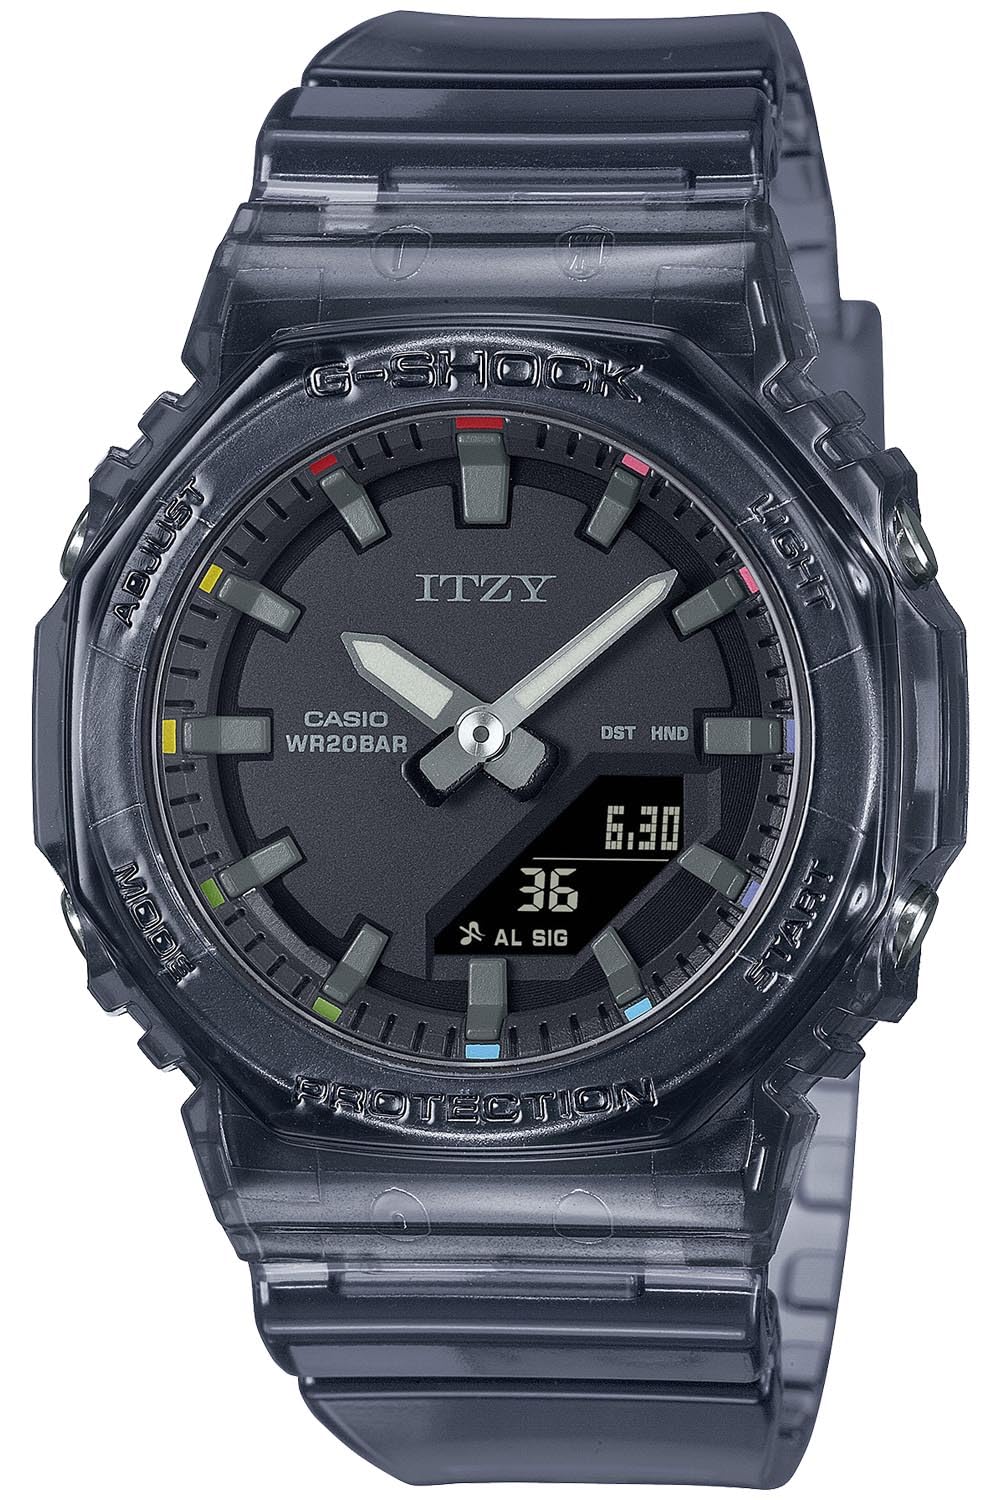 ジーショック [カシオ] 腕時計 【国内正規品】ITZYコラボレーションモデル GMA-P2100ZY-1AJR レディース スケルトンブラック - BanzaiHobby